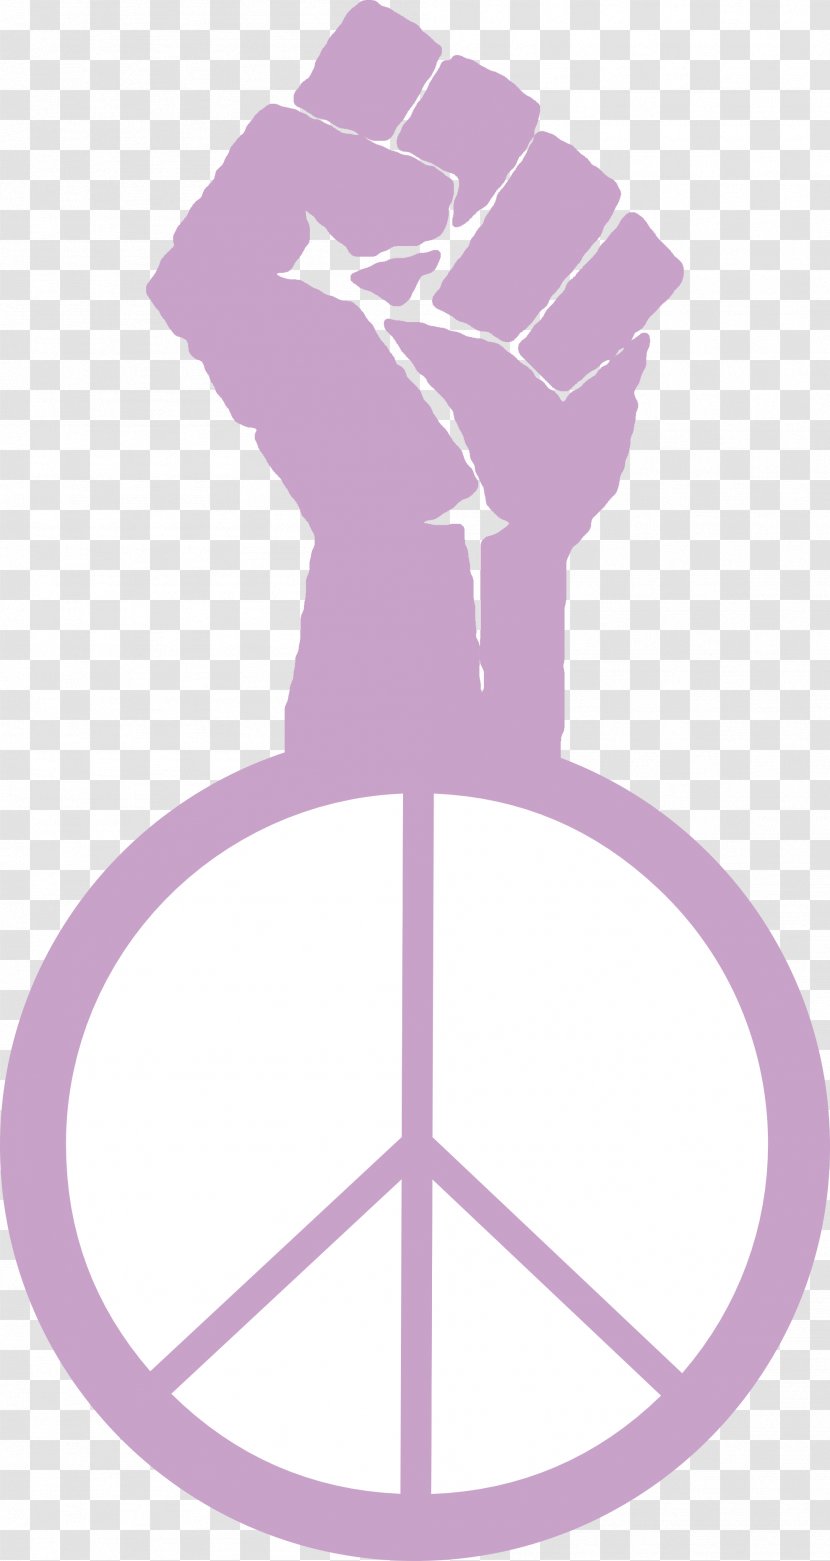 Peace Symbols Justice Clip Art - Social - Wall-e Transparent PNG